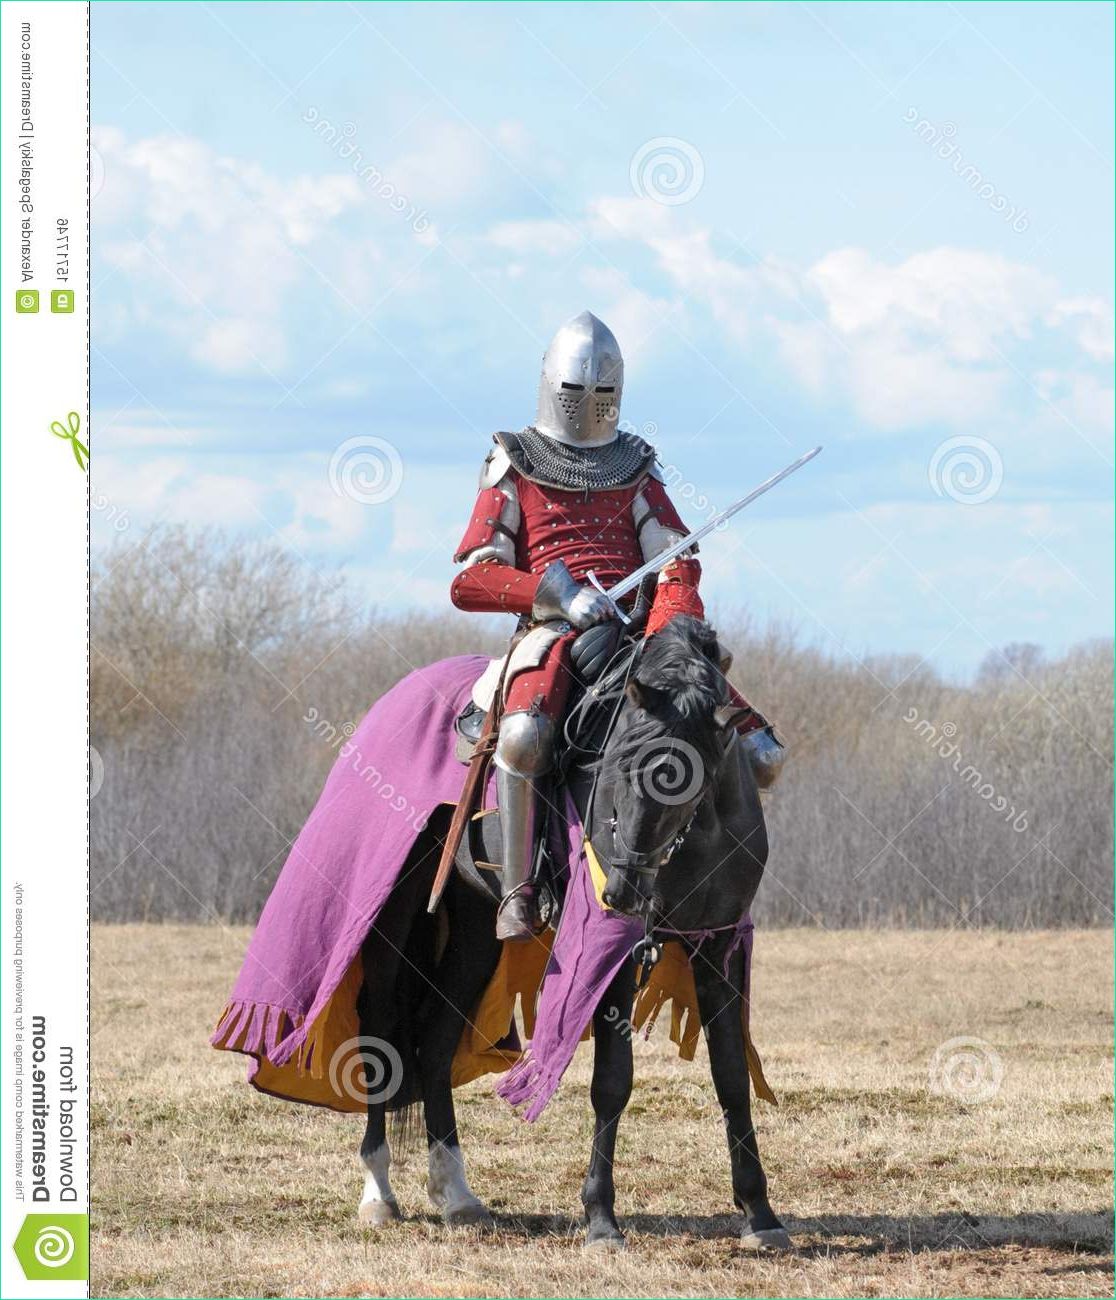 image libre de droits le chevalier de cheval image